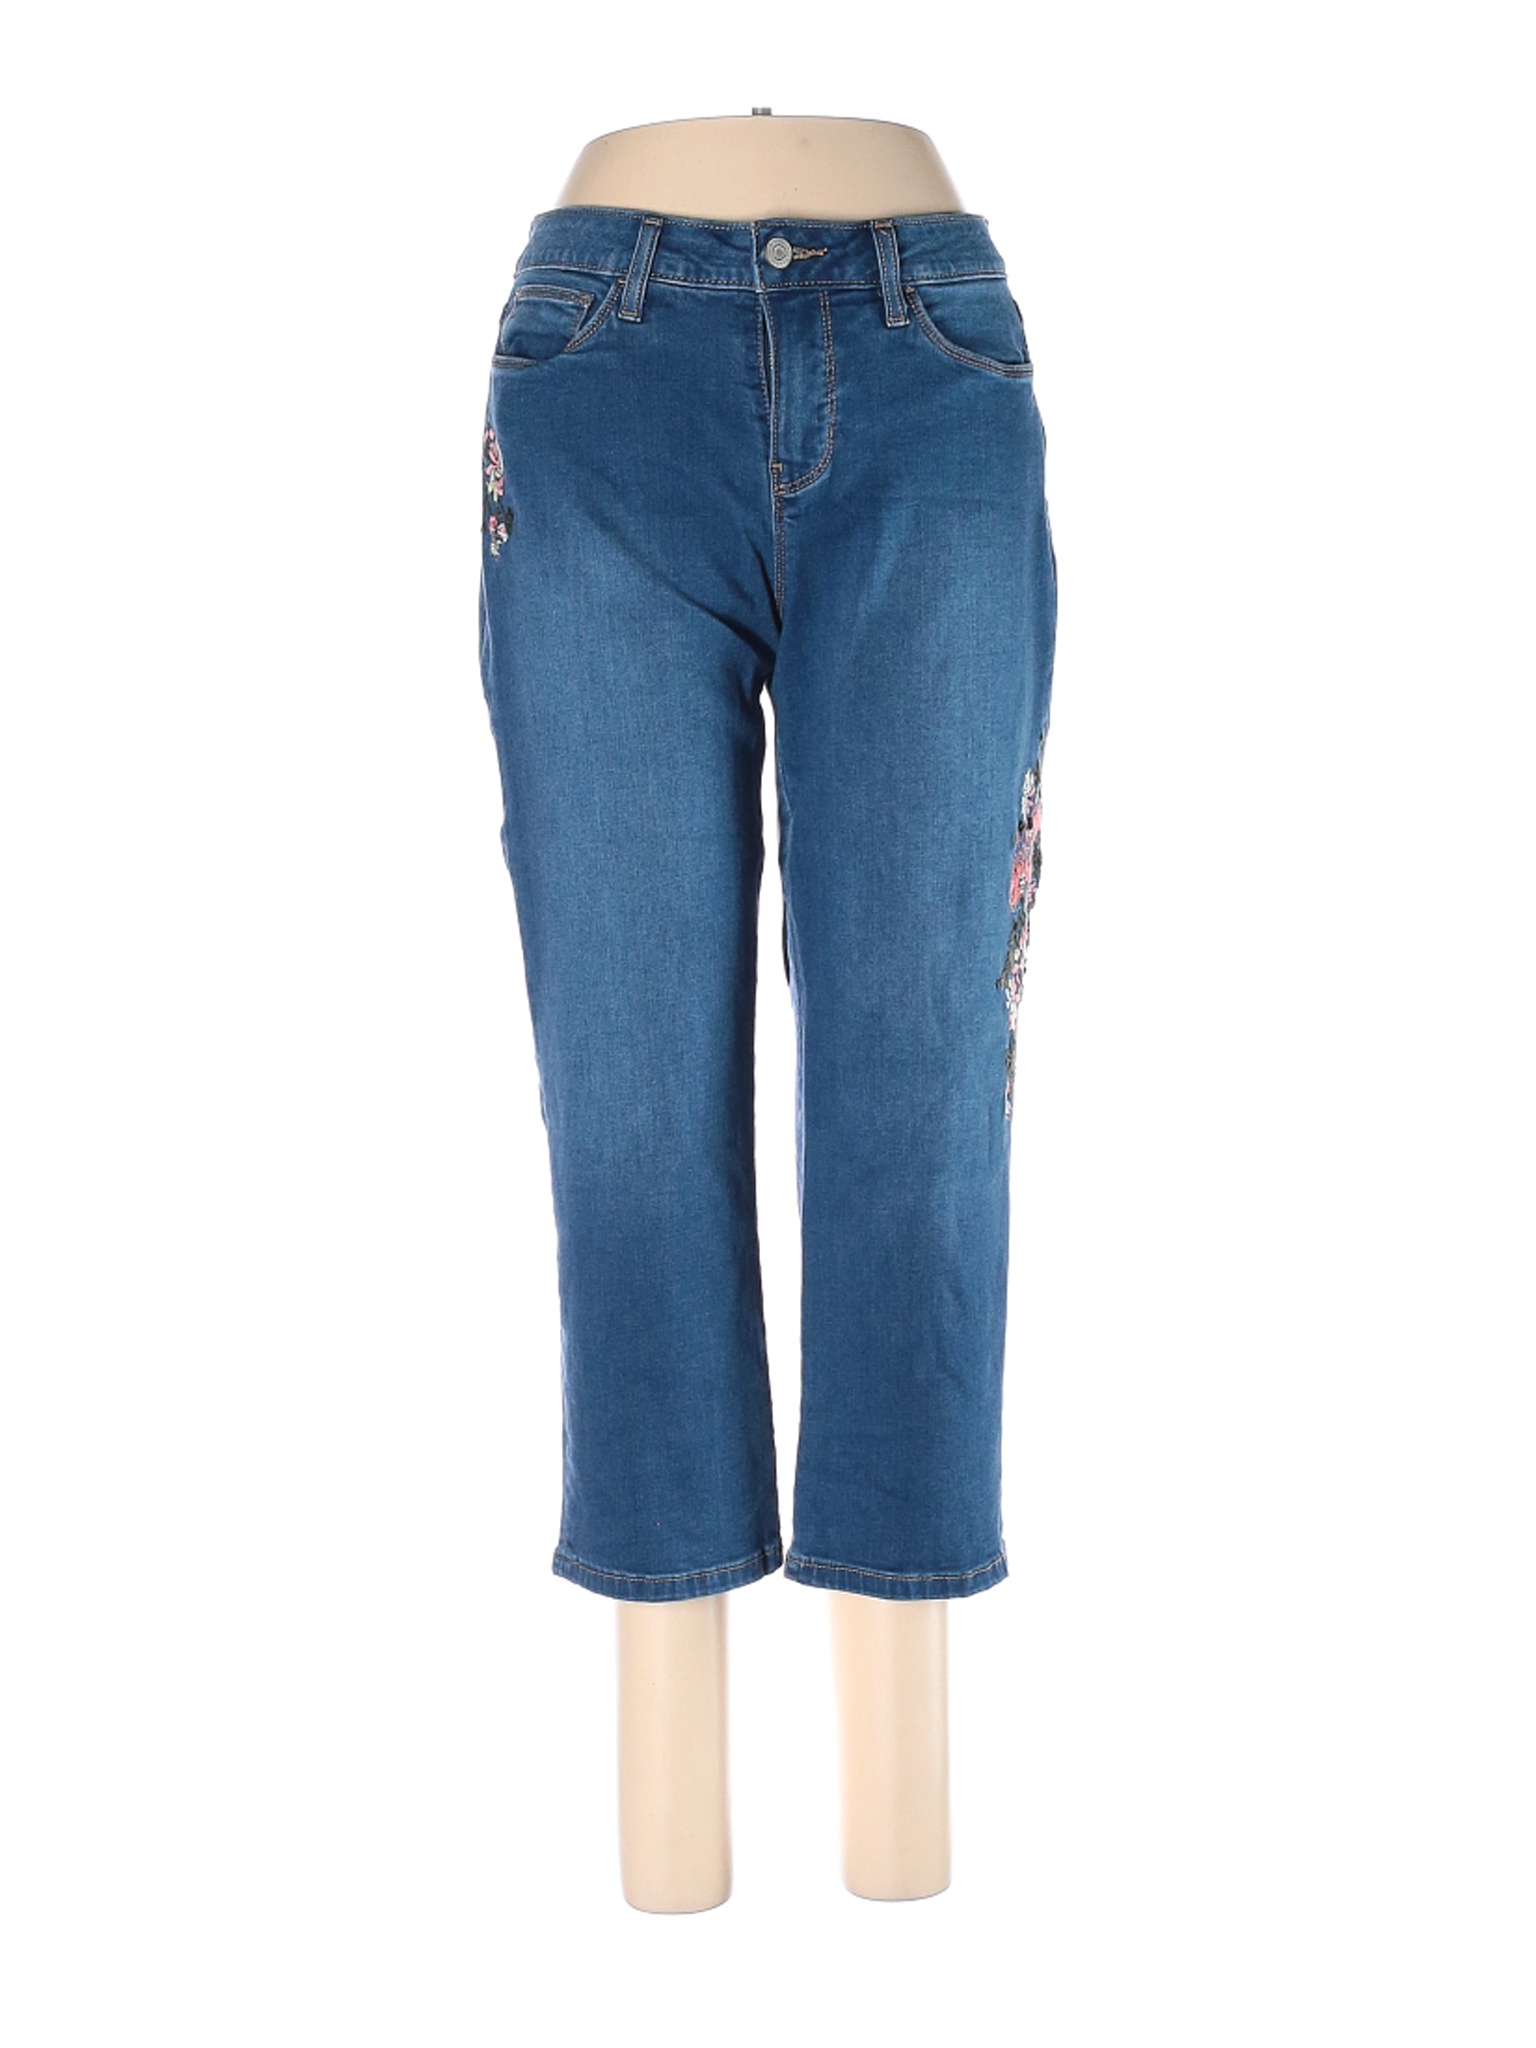 Croft & Barrow Women Blue Jeans 6 | eBay